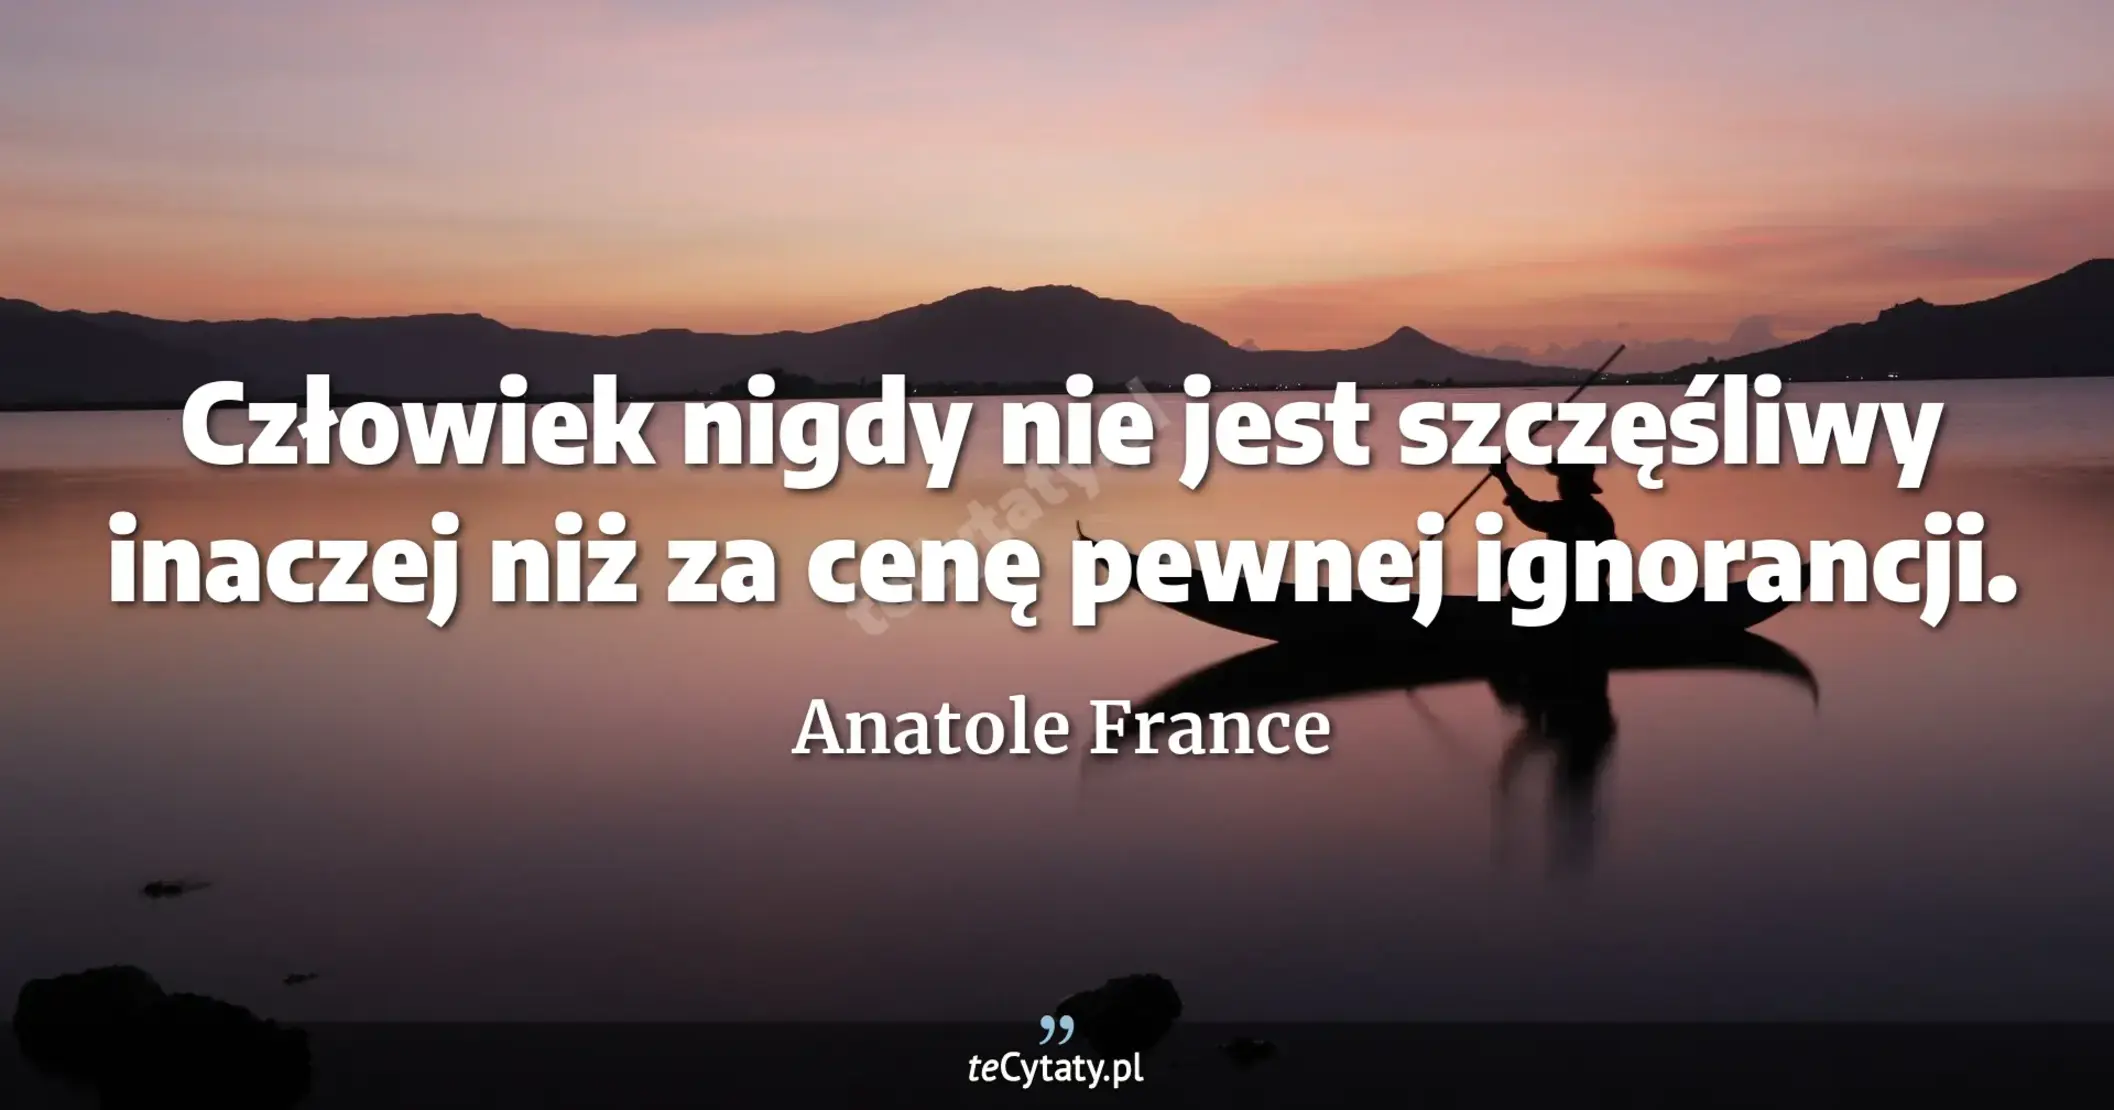 Człowiek nigdy nie jest szczęśliwy inaczej niż za cenę pewnej ignorancji. - Anatole France